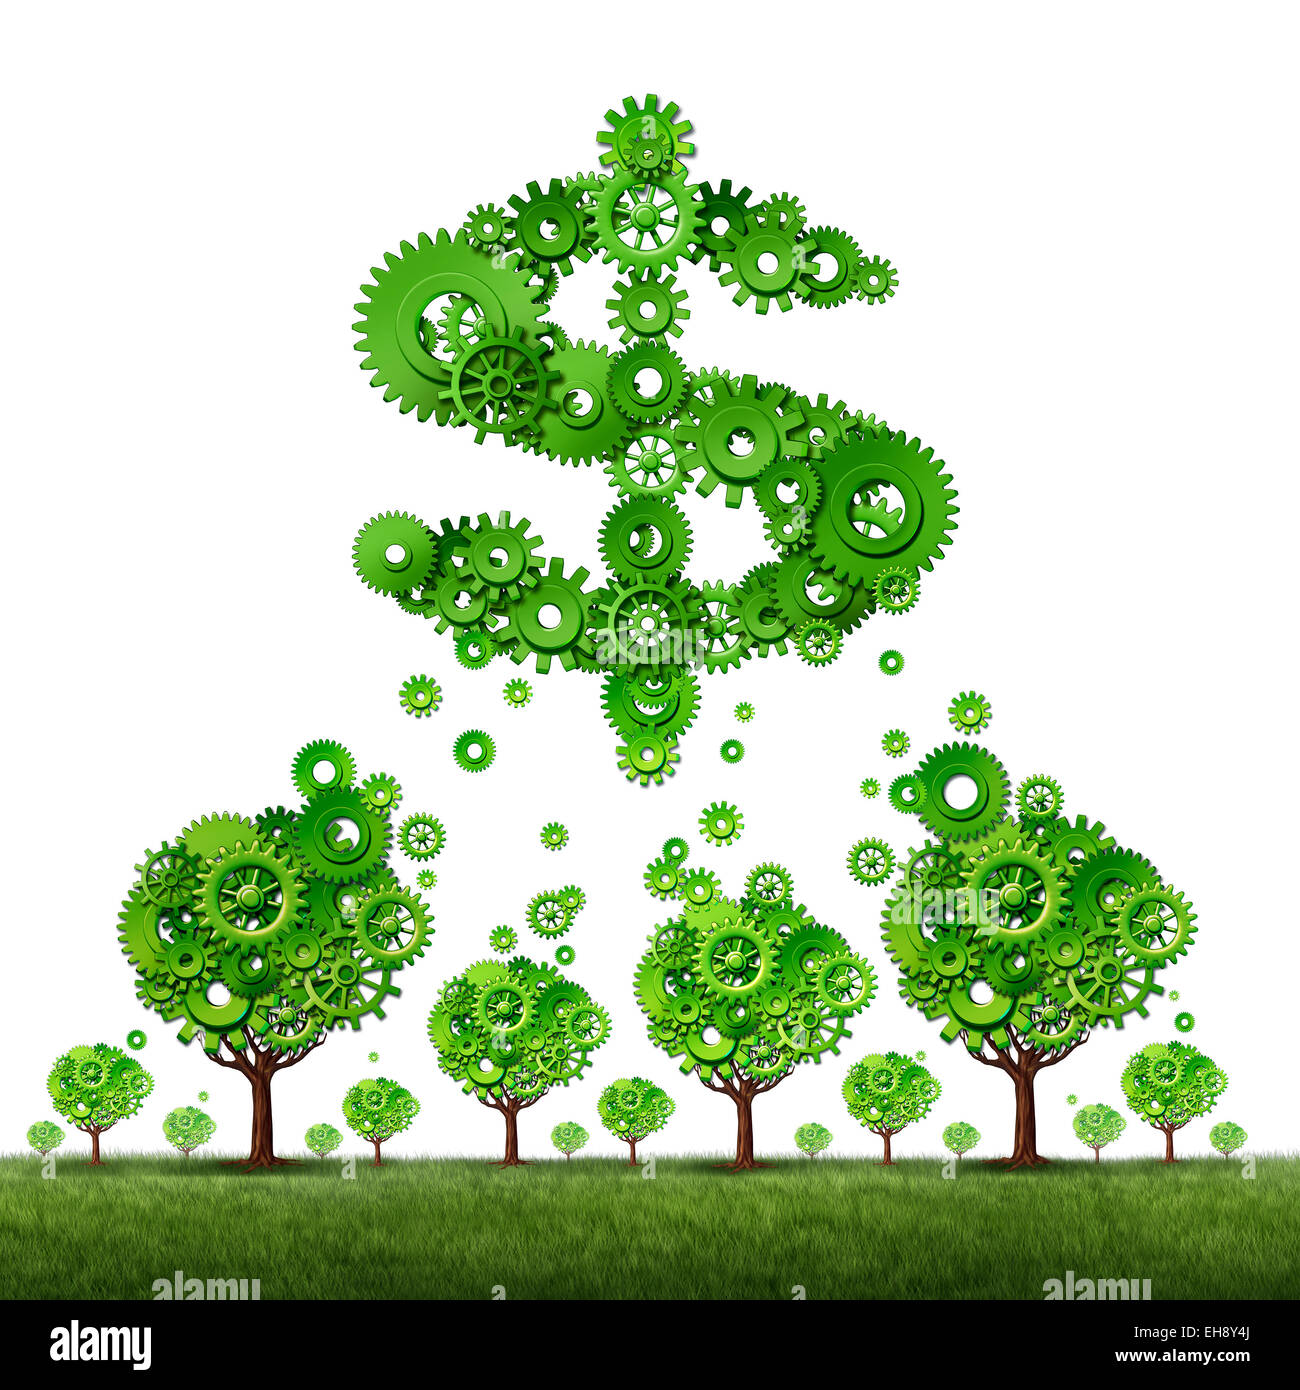 Crowdfunding investieren und kollektiven Einkommen Konzept als eine Gruppe von grünen Bäumen gemacht von Zahnrädern, die einen Beitrag zu einem Dollarzeichen mit Zahnräder wie ein Crowd-funding Idee geformt. Stockfoto